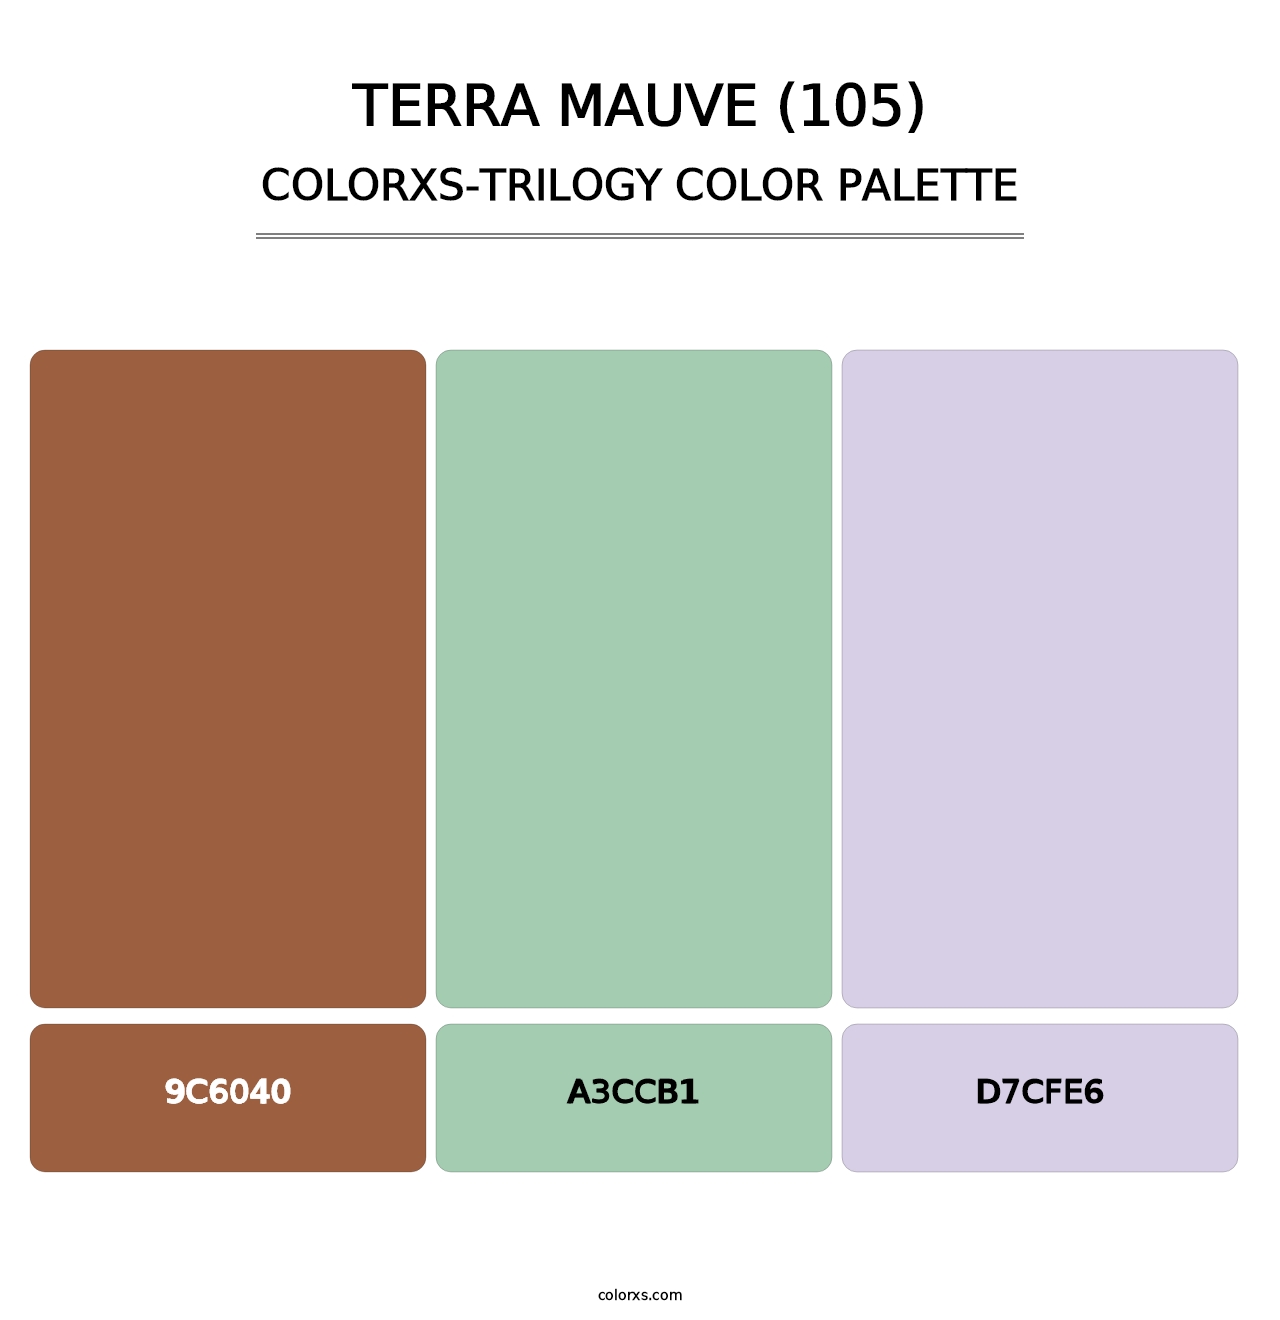 Terra Mauve (105) - Colorxs Trilogy Palette